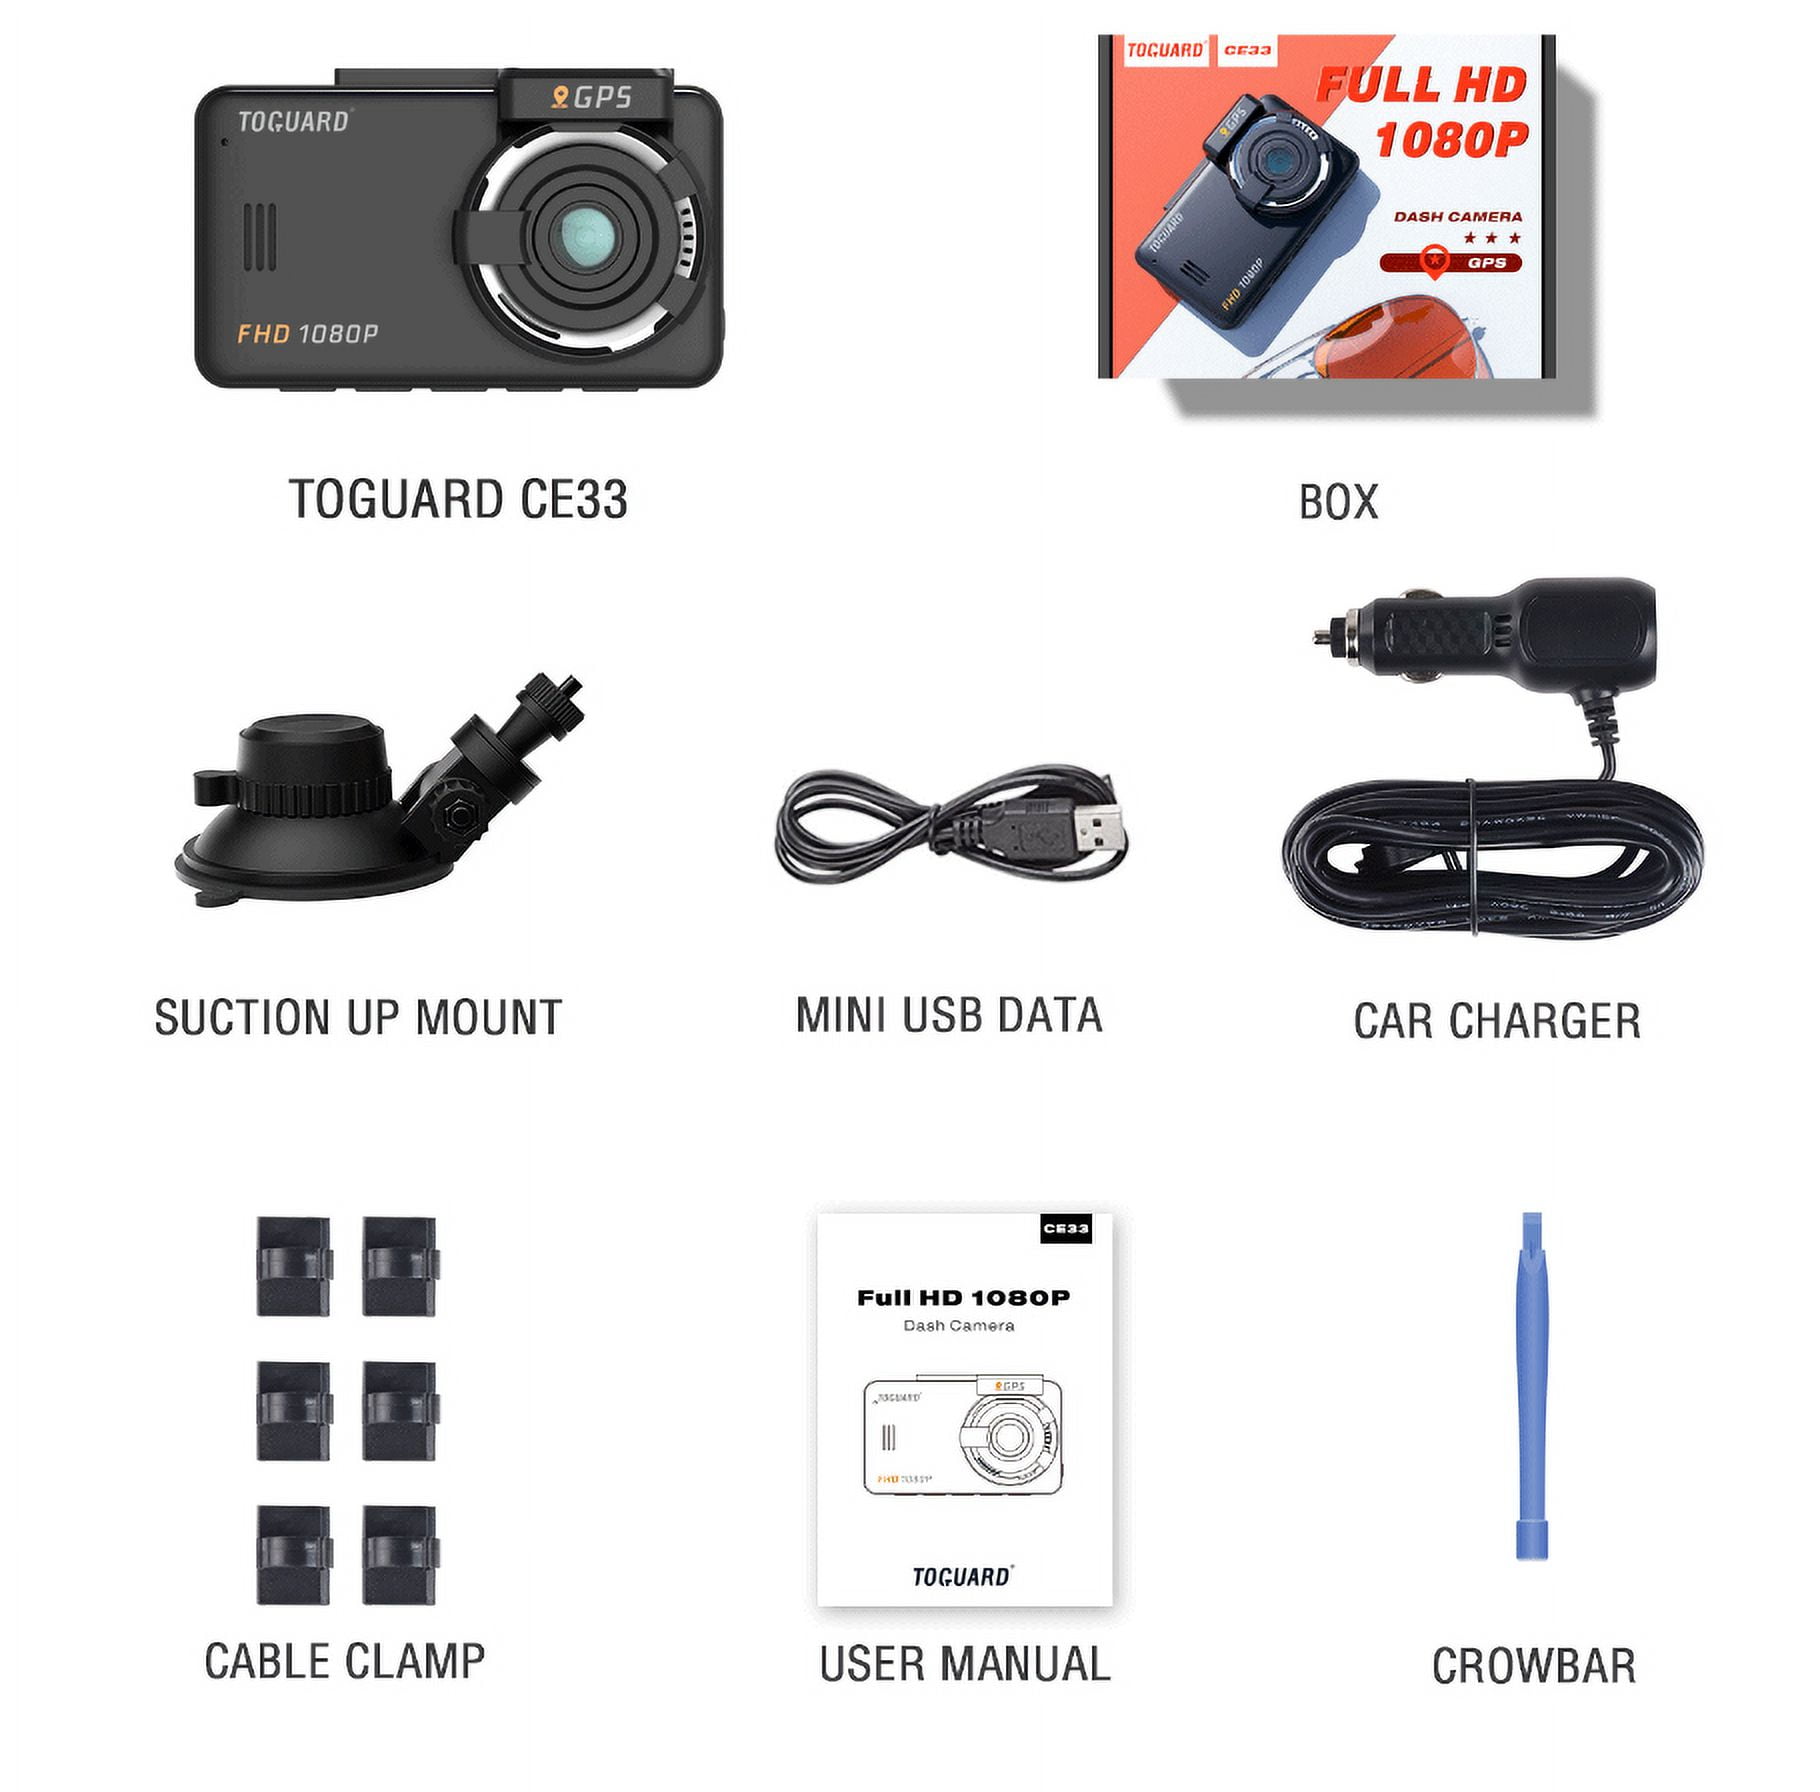 Campark C300 1.5” 3 Channel Front & Inside & Rear(1080P+720P+720P) Dash Cam